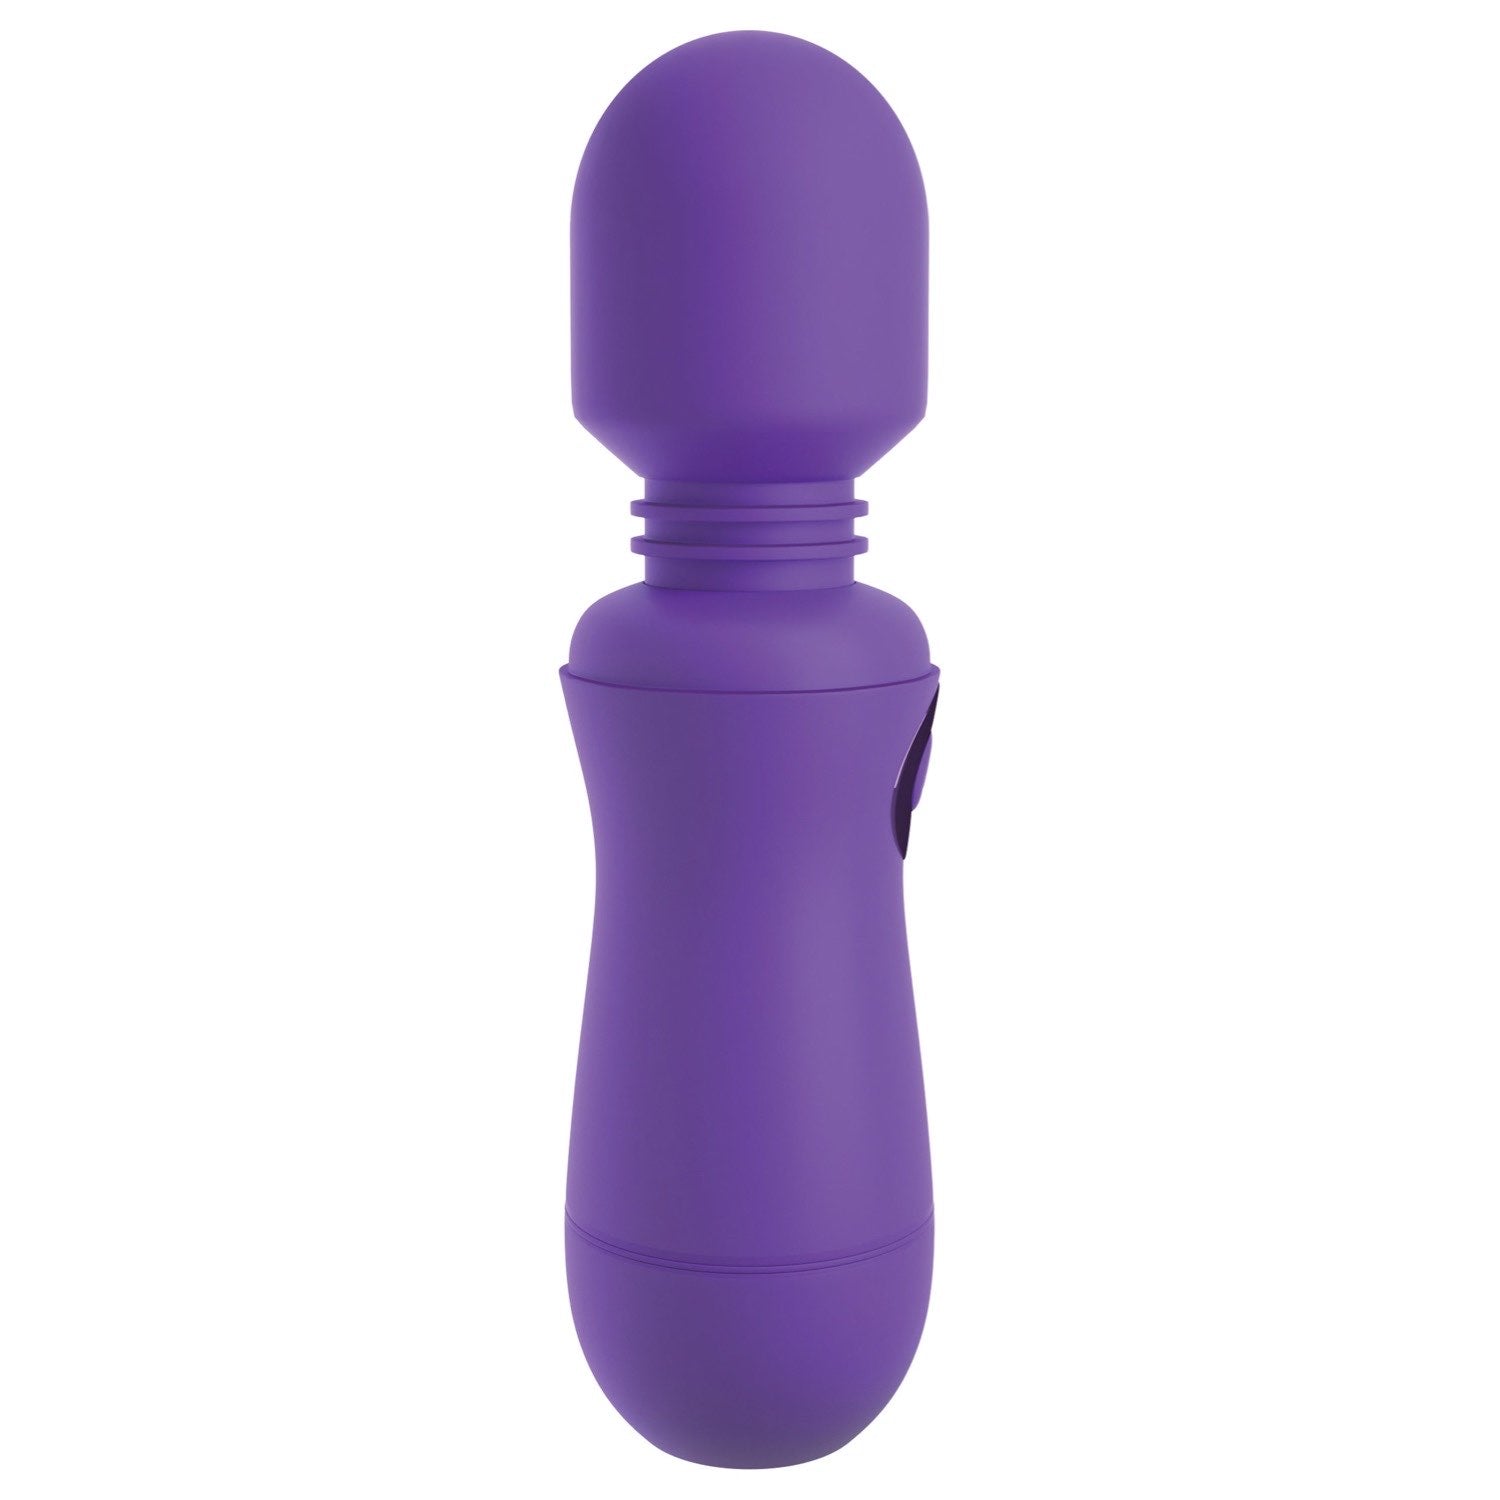 我的天啊！ 我的天啊！魔杖 #Enjoy - 紫色 USB 充电按摩棒 by Pipedream